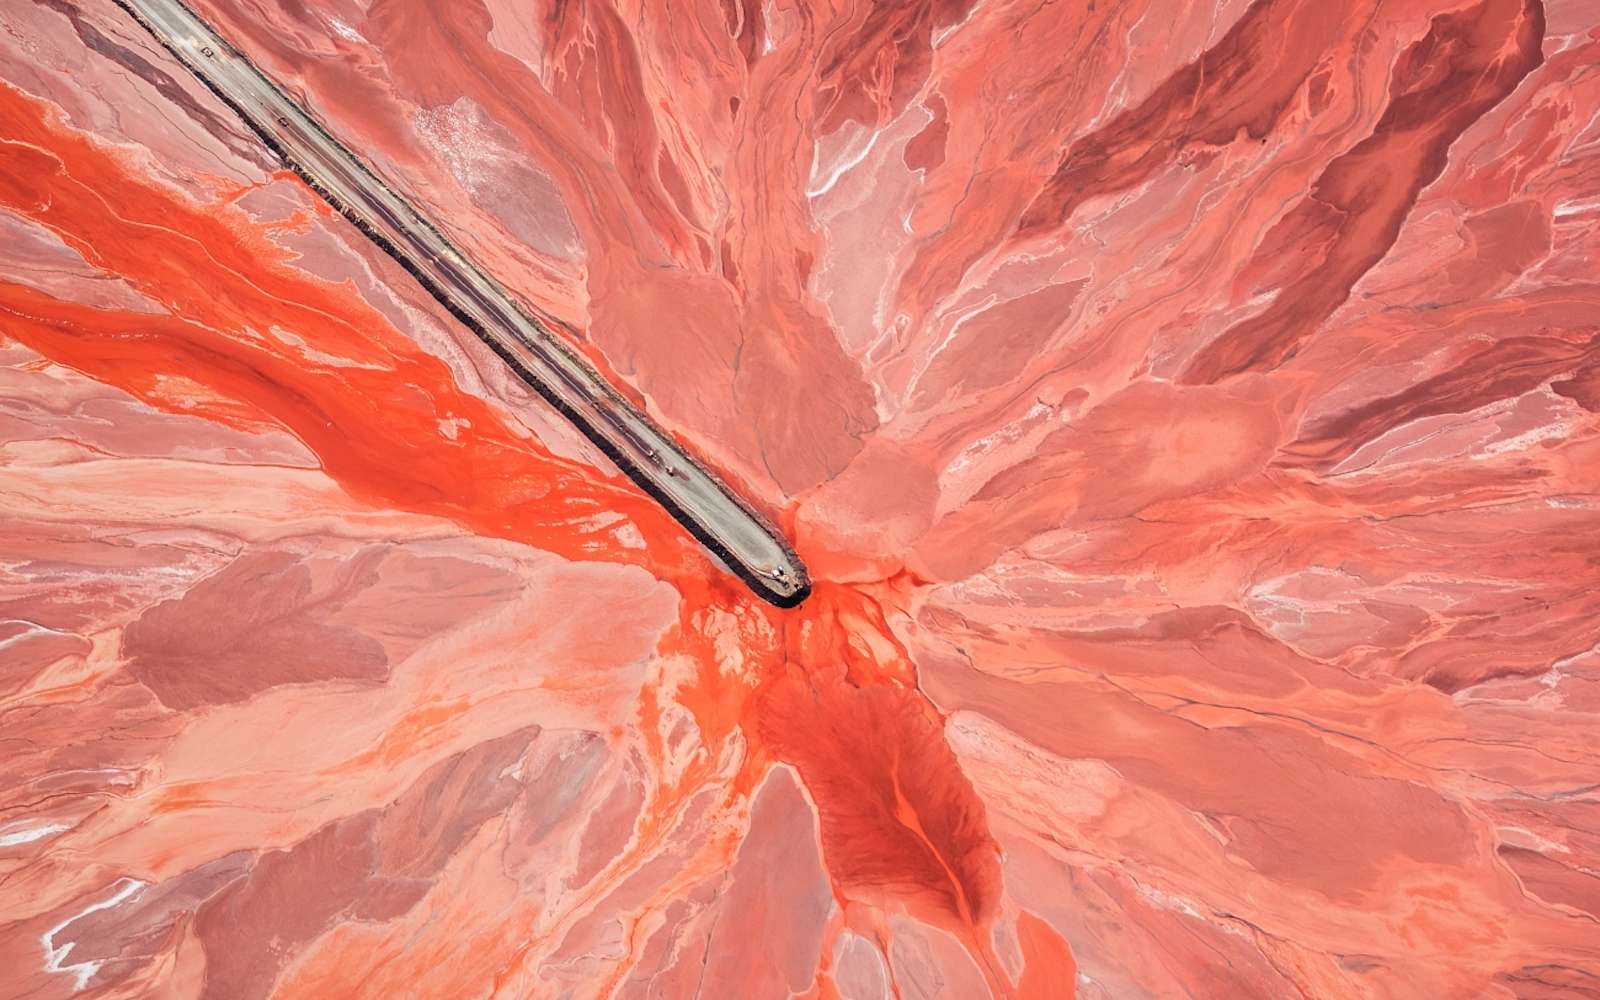 Prix catégorie abstrait : bassin de résidus issus de l’extraction minière, photographié en Australie. © David Dahlenburg, Drone Photo Awards 2021